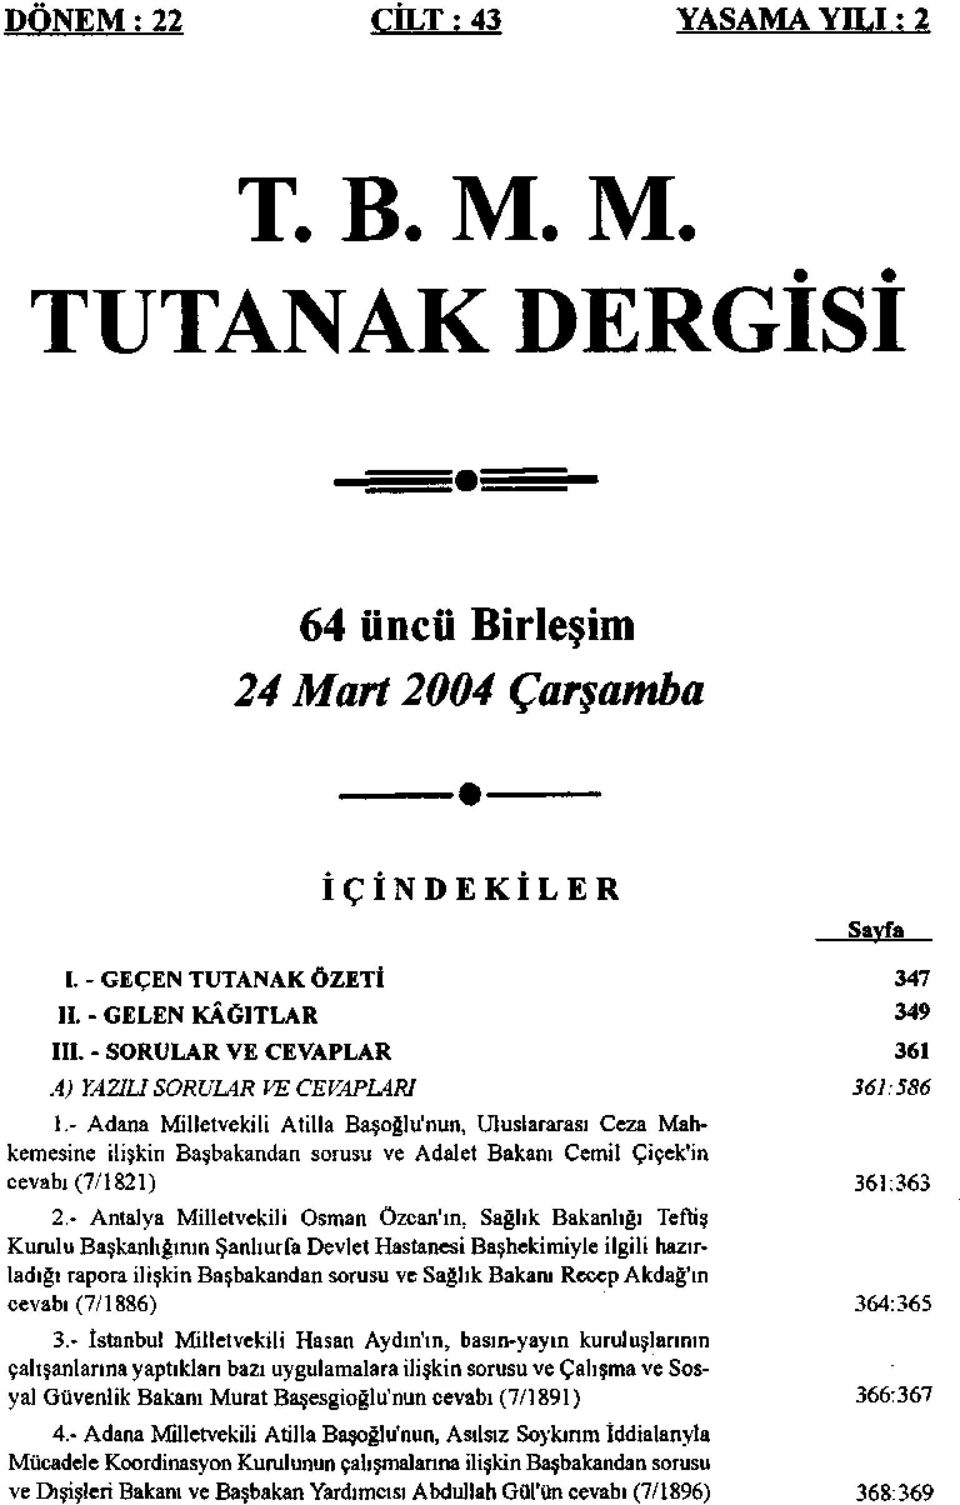 - Adana Milletvekili Atilla Başoğlu'nun, Uluslararası Ceza Mahkemesine ilişkin Başbakandan sorusu ve Adalet Bakanı Cemil Çiçek'in cevabı(7/1821) 2.